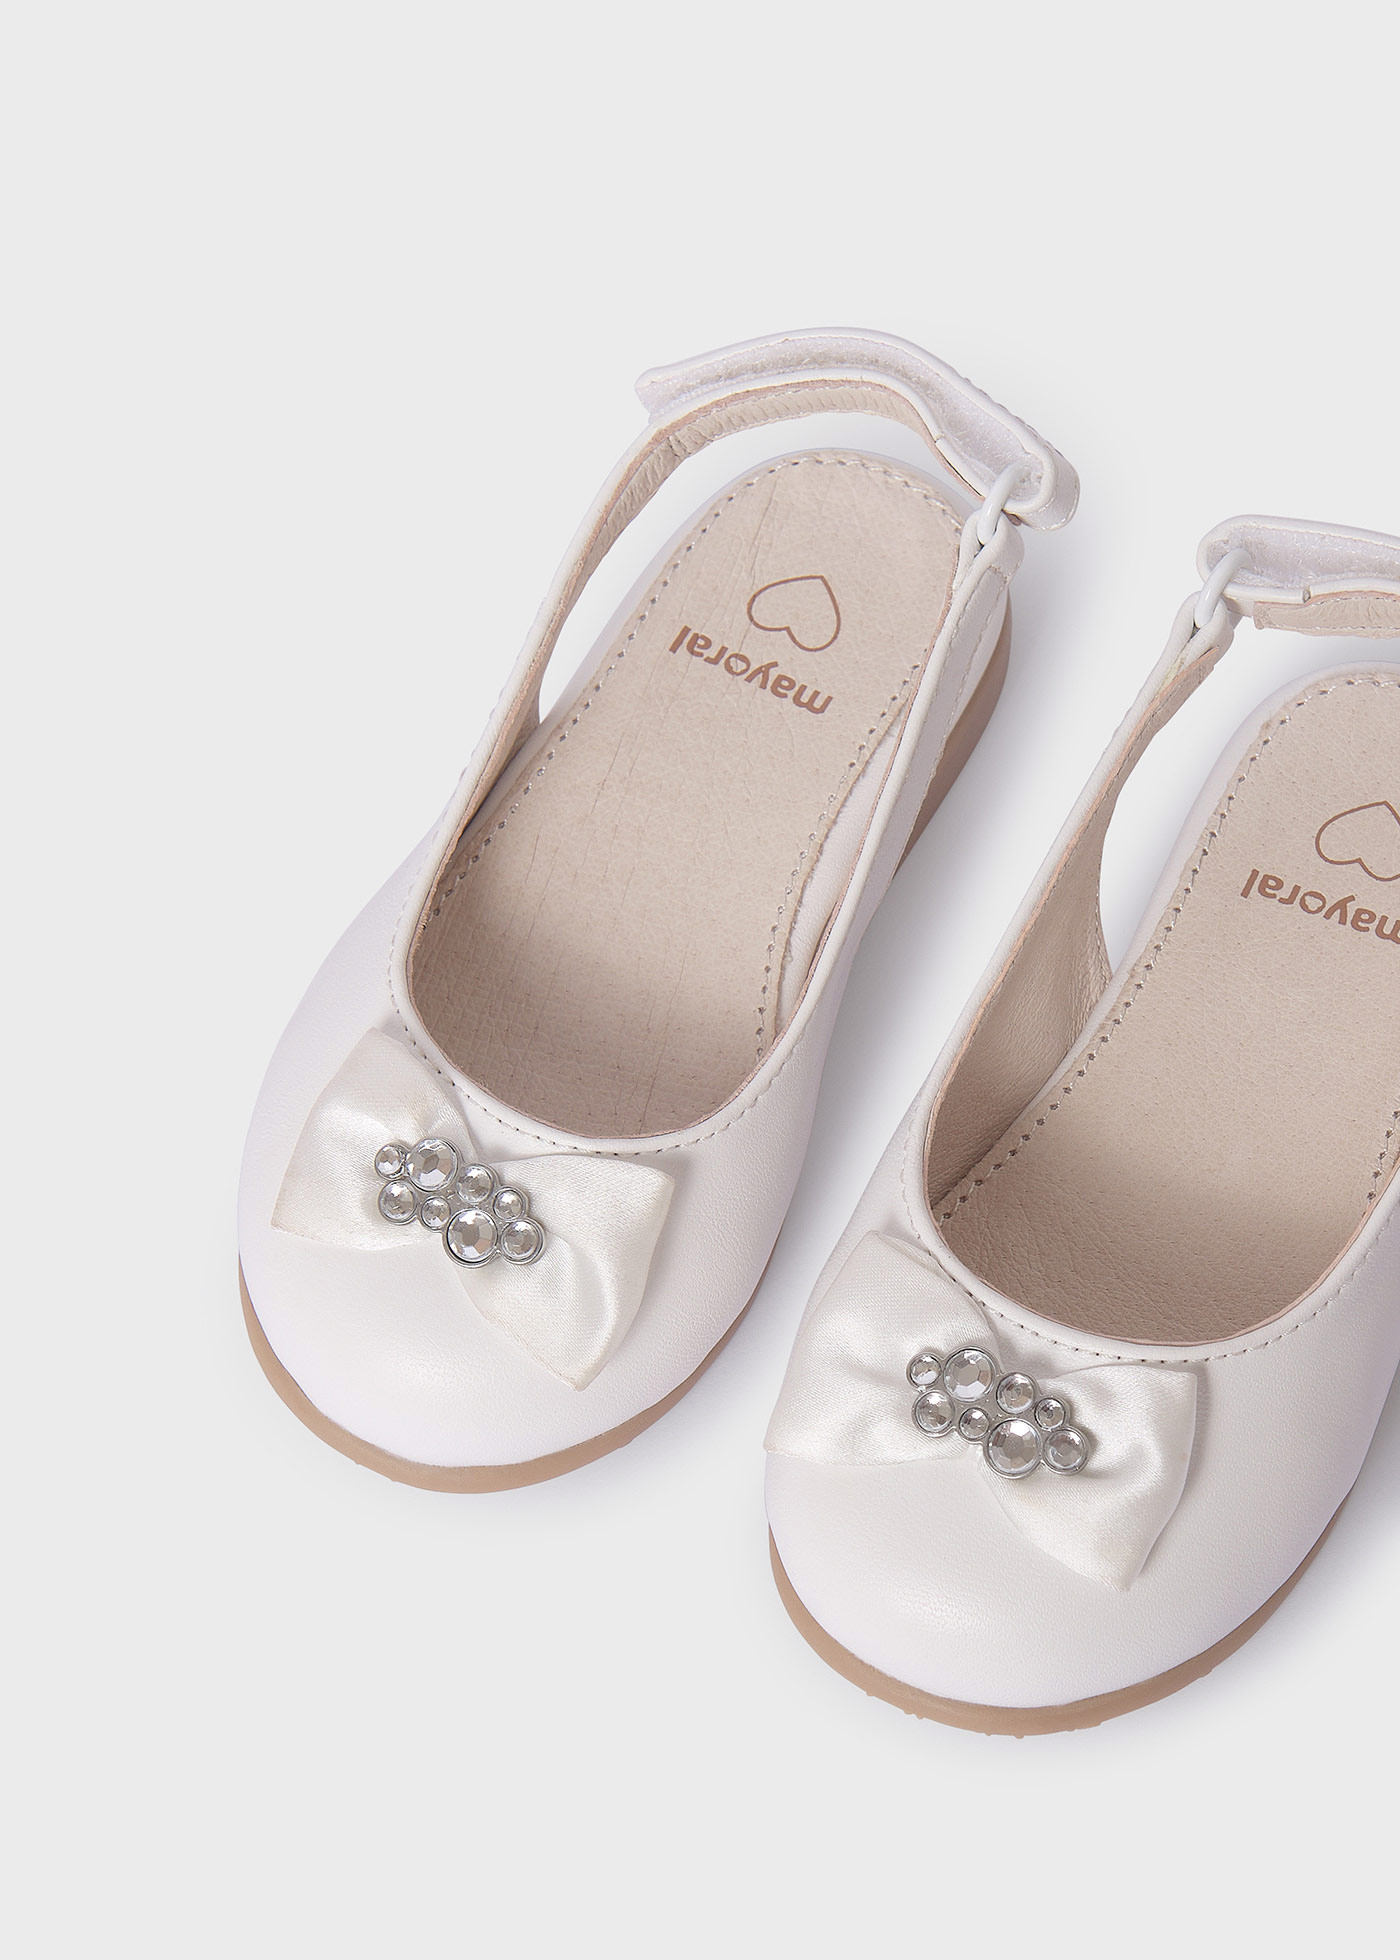 Zapatos destalonados plantilla piel sostenible bebé